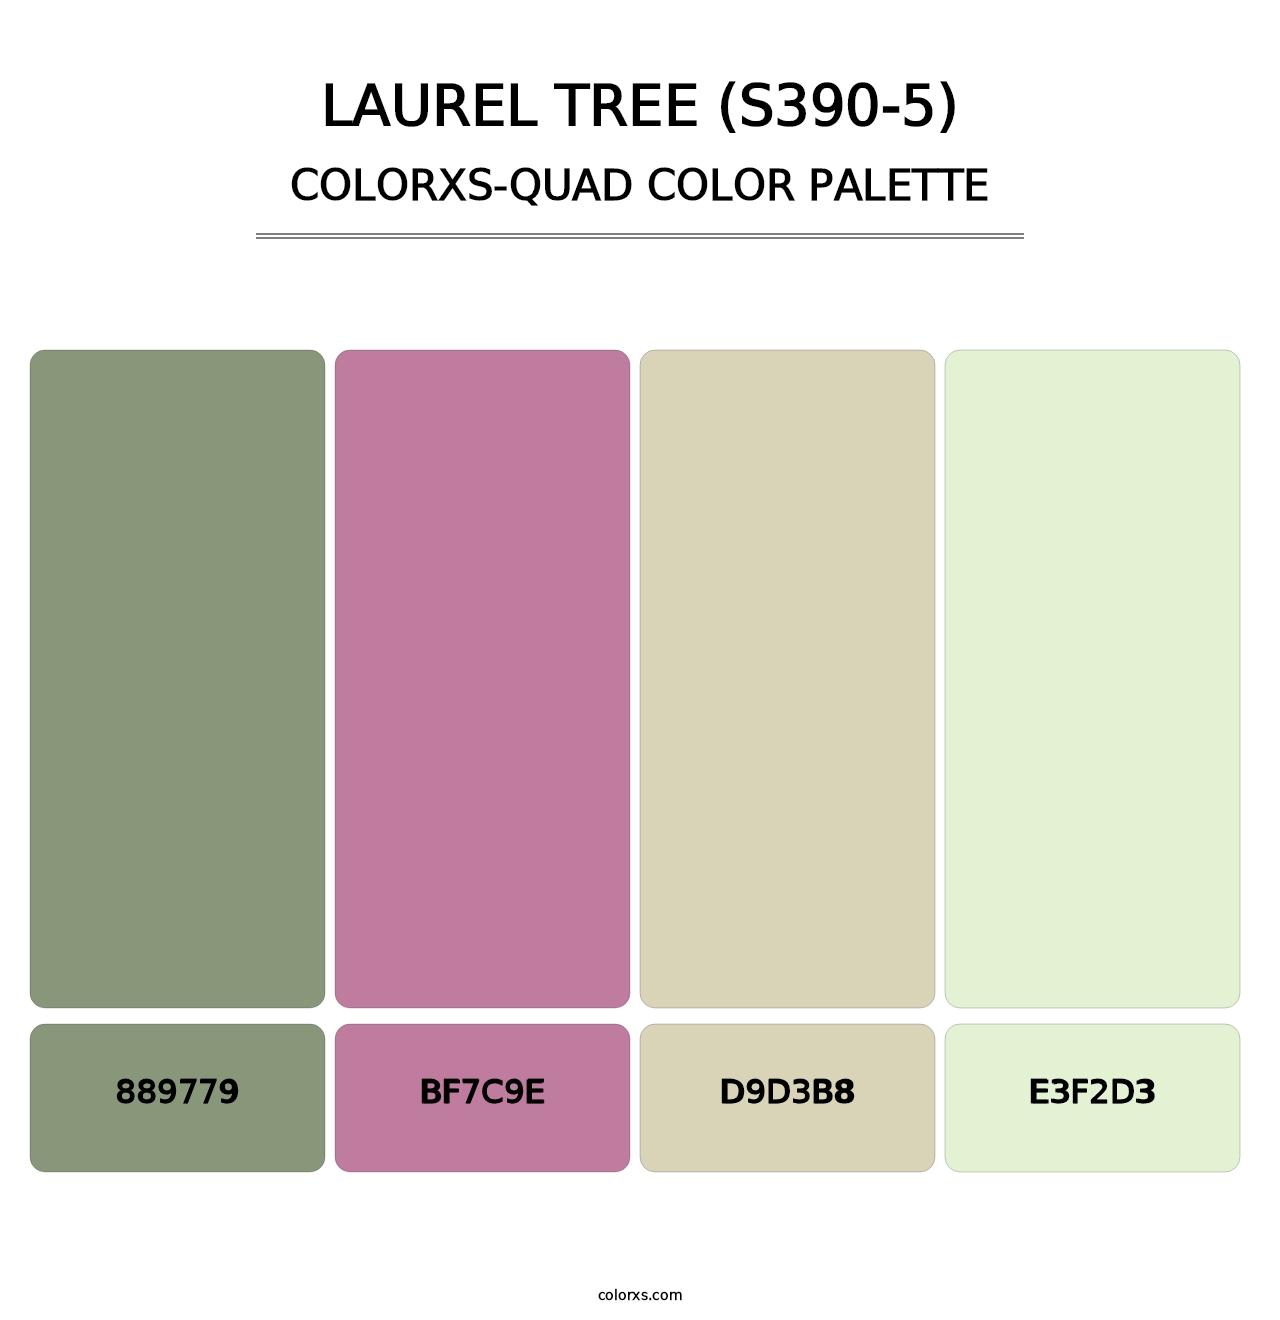 Laurel Tree (S390-5) - Colorxs Quad Palette